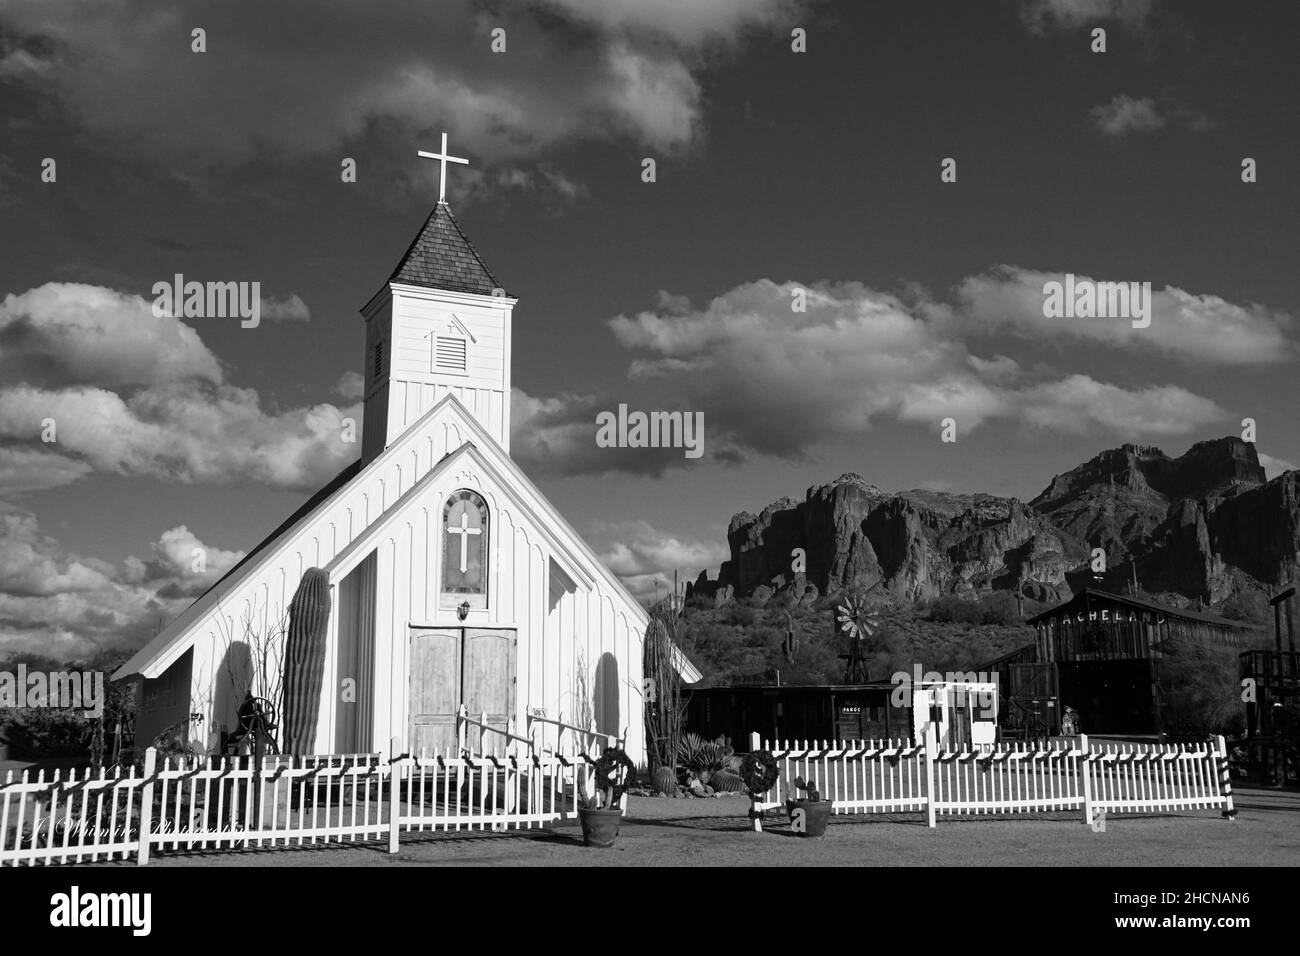 La chapelle Elvis Presley se trouve près de la base des montagnes Superstition en Arizona Banque D'Images